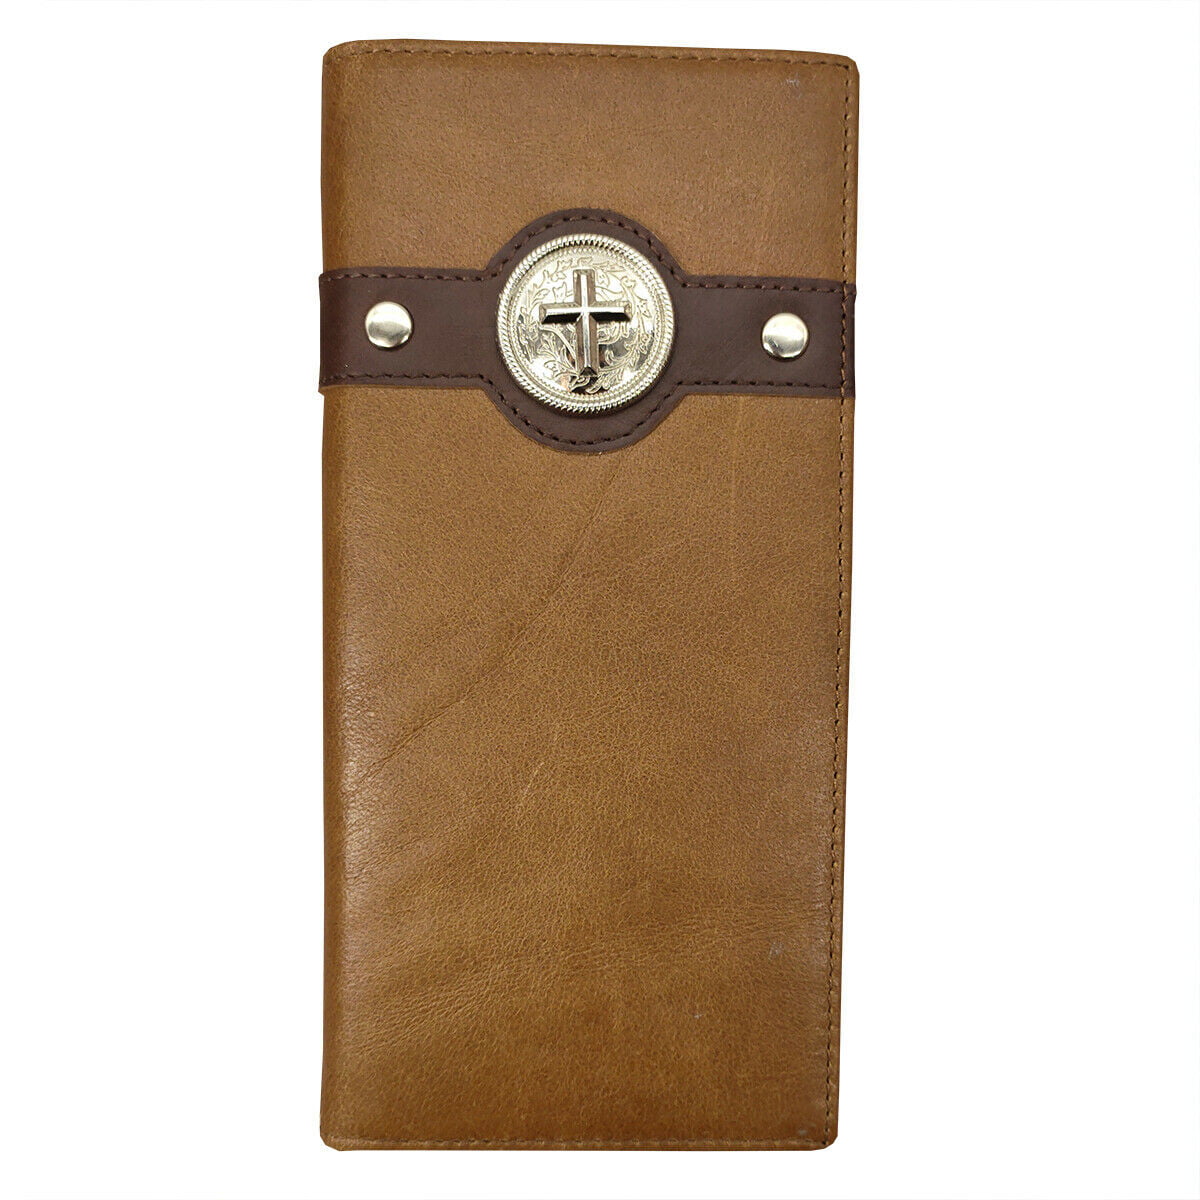 Western Cowboy Wallet Cross Genuine Leather Bi-fold Long wallet for Men